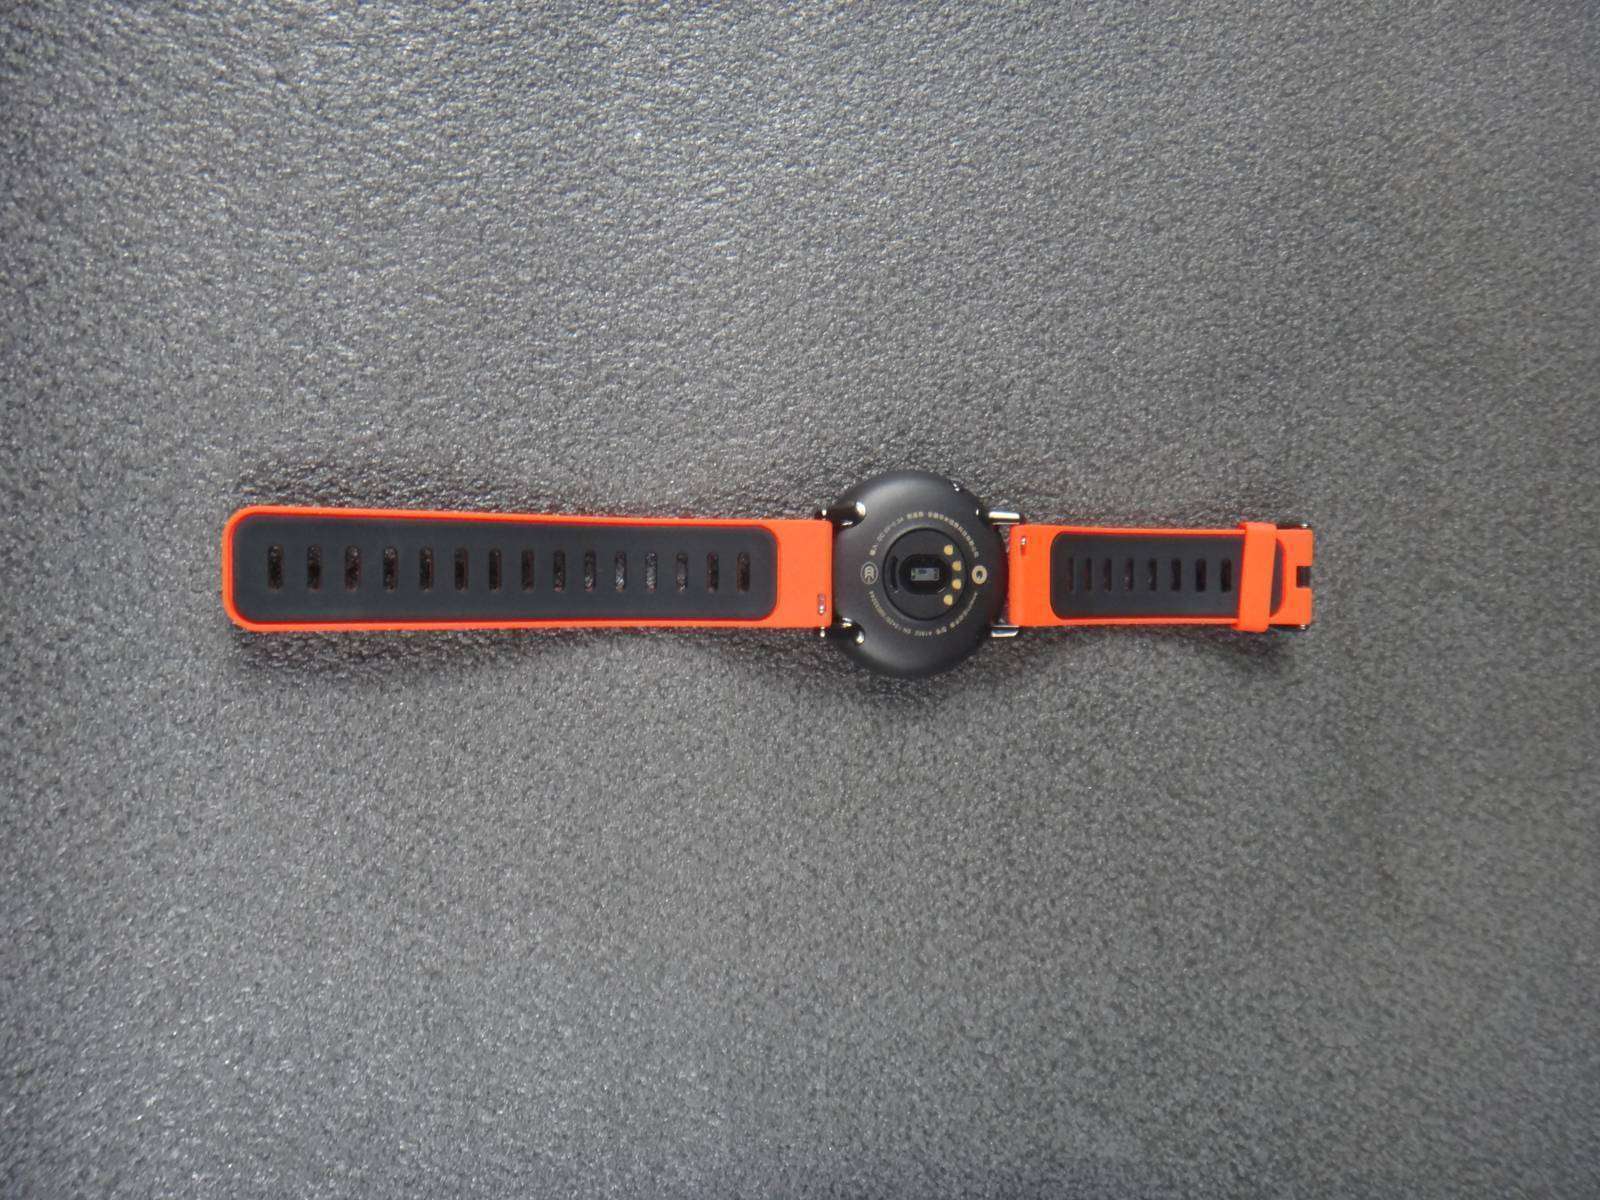 GearBest: Xiaomi AMAZFIT умные часы с продвинутым функционалом и различными уведомлениями